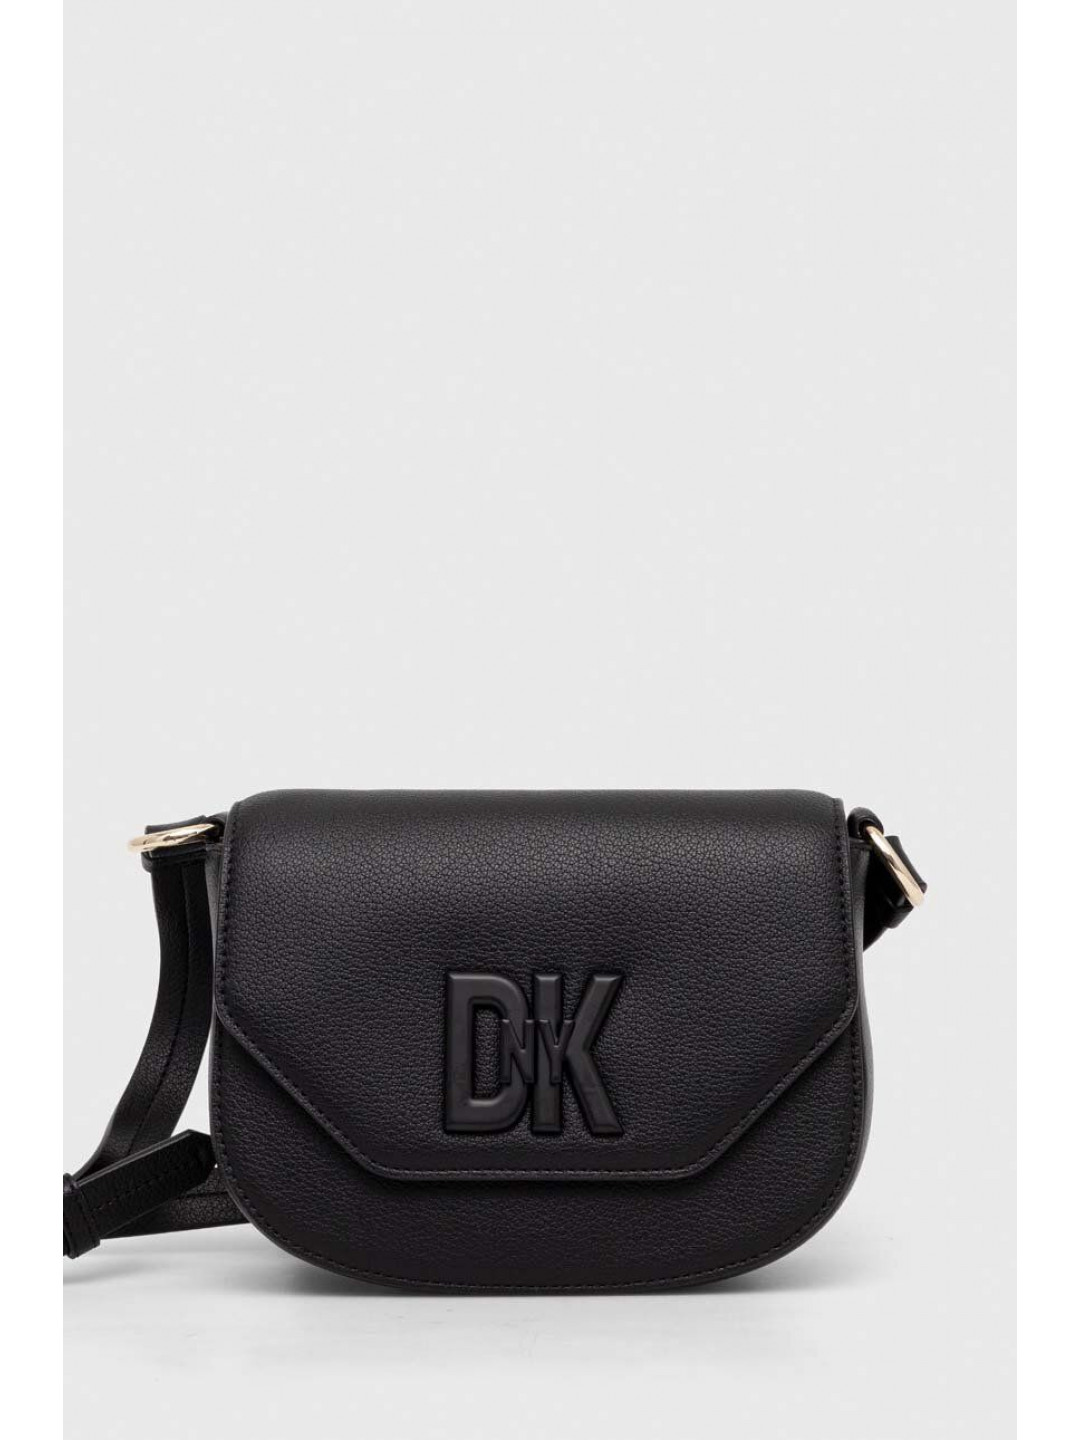 Kožená kabelka Dkny černá barva R41EKC54